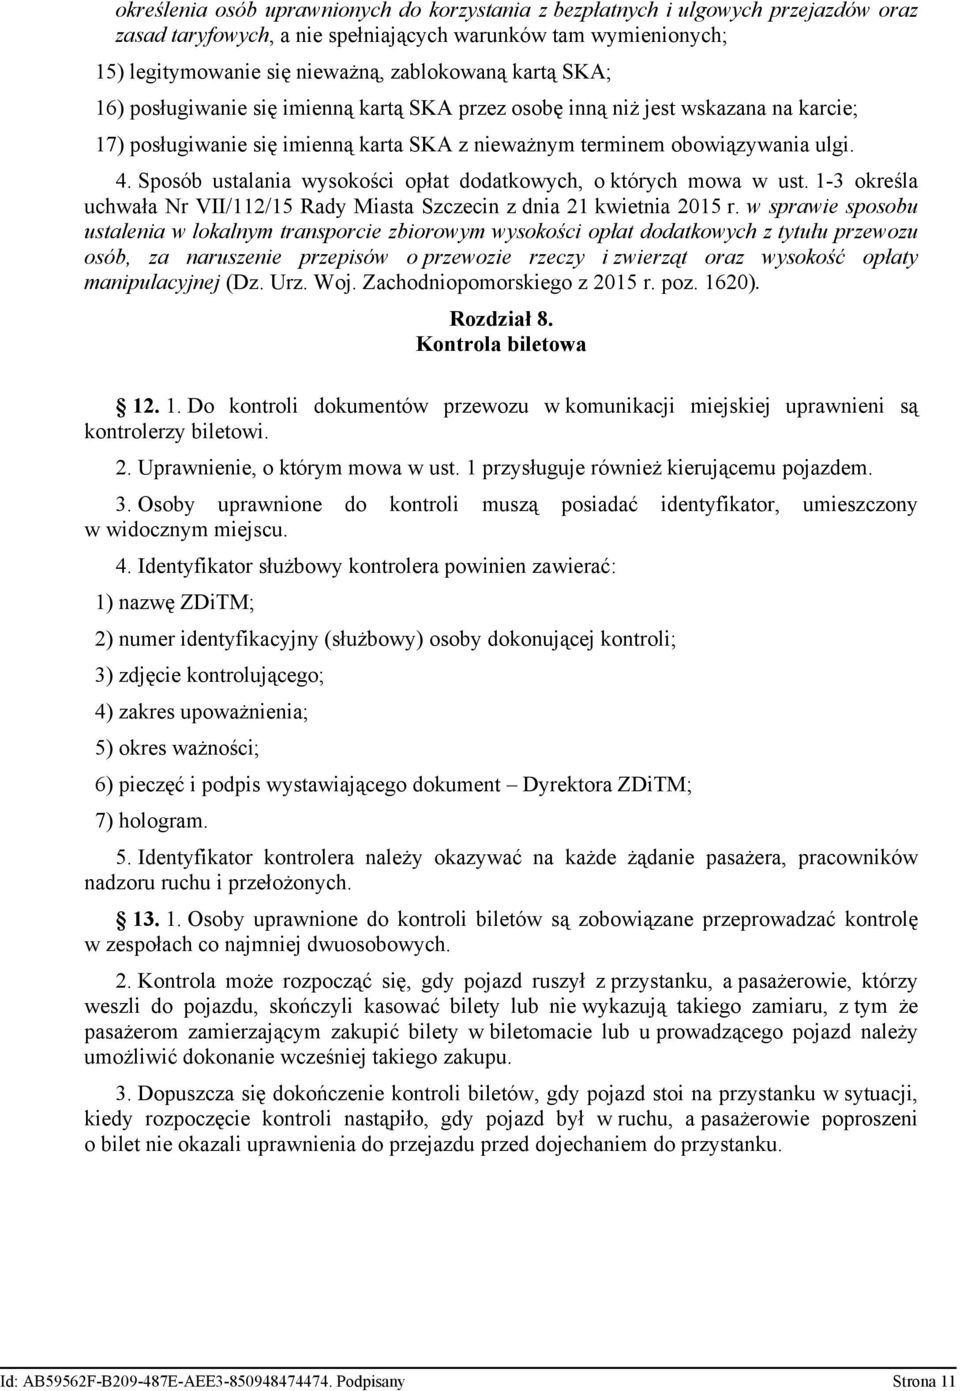 Sposób ustalania wysokości opłat dodatkowych, o których mowa w ust. 1-3 określa uchwała Nr VII/112/15 Rady Miasta Szczecin z dnia 21 kwietnia 2015 r.